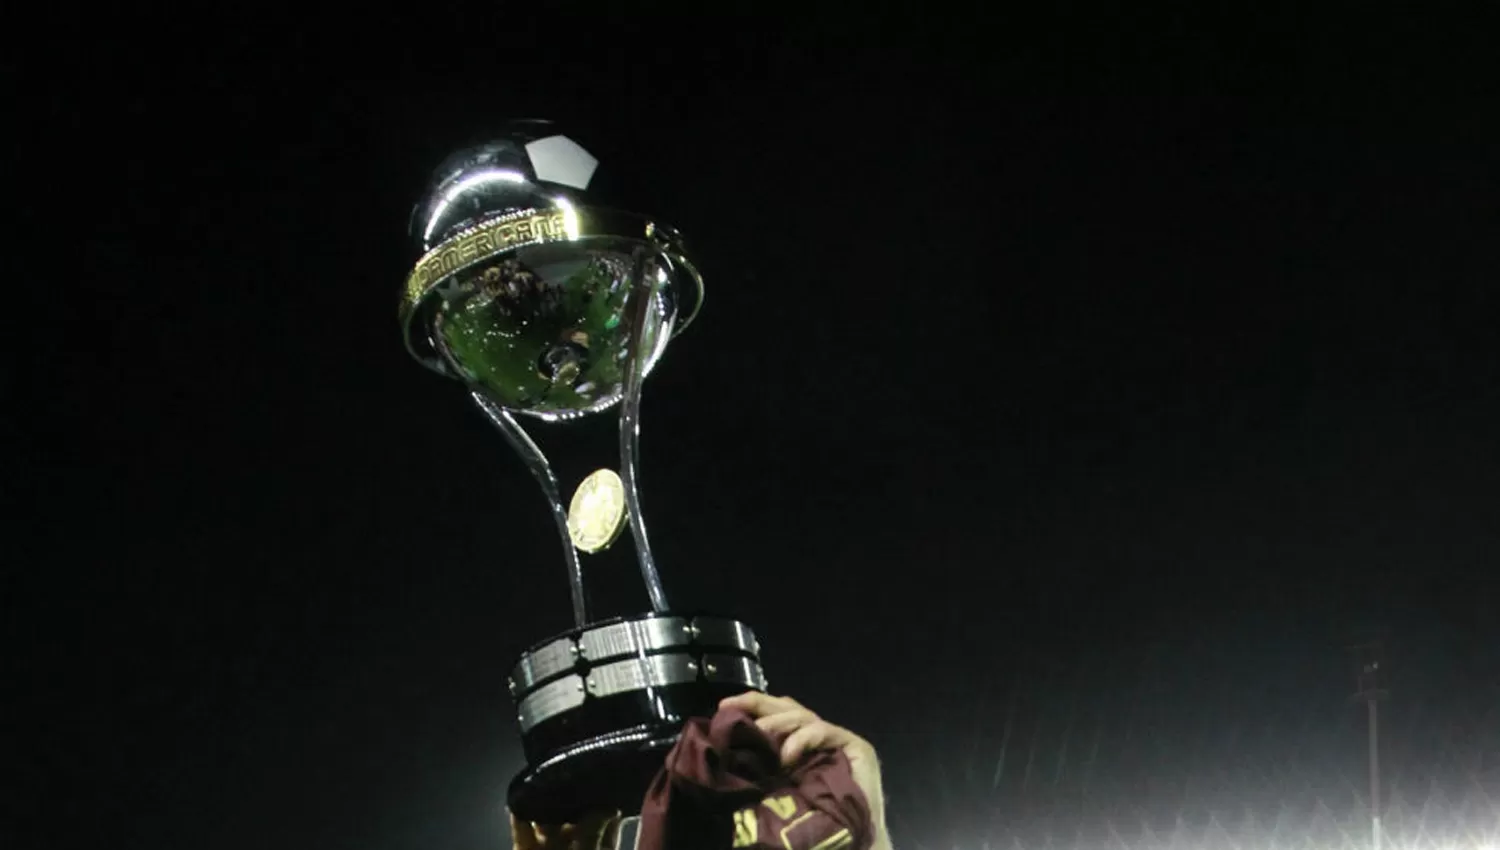 La Copa Sudamericana, lo más destacado del martes: hora, TV y el resto de la agenda deportiva